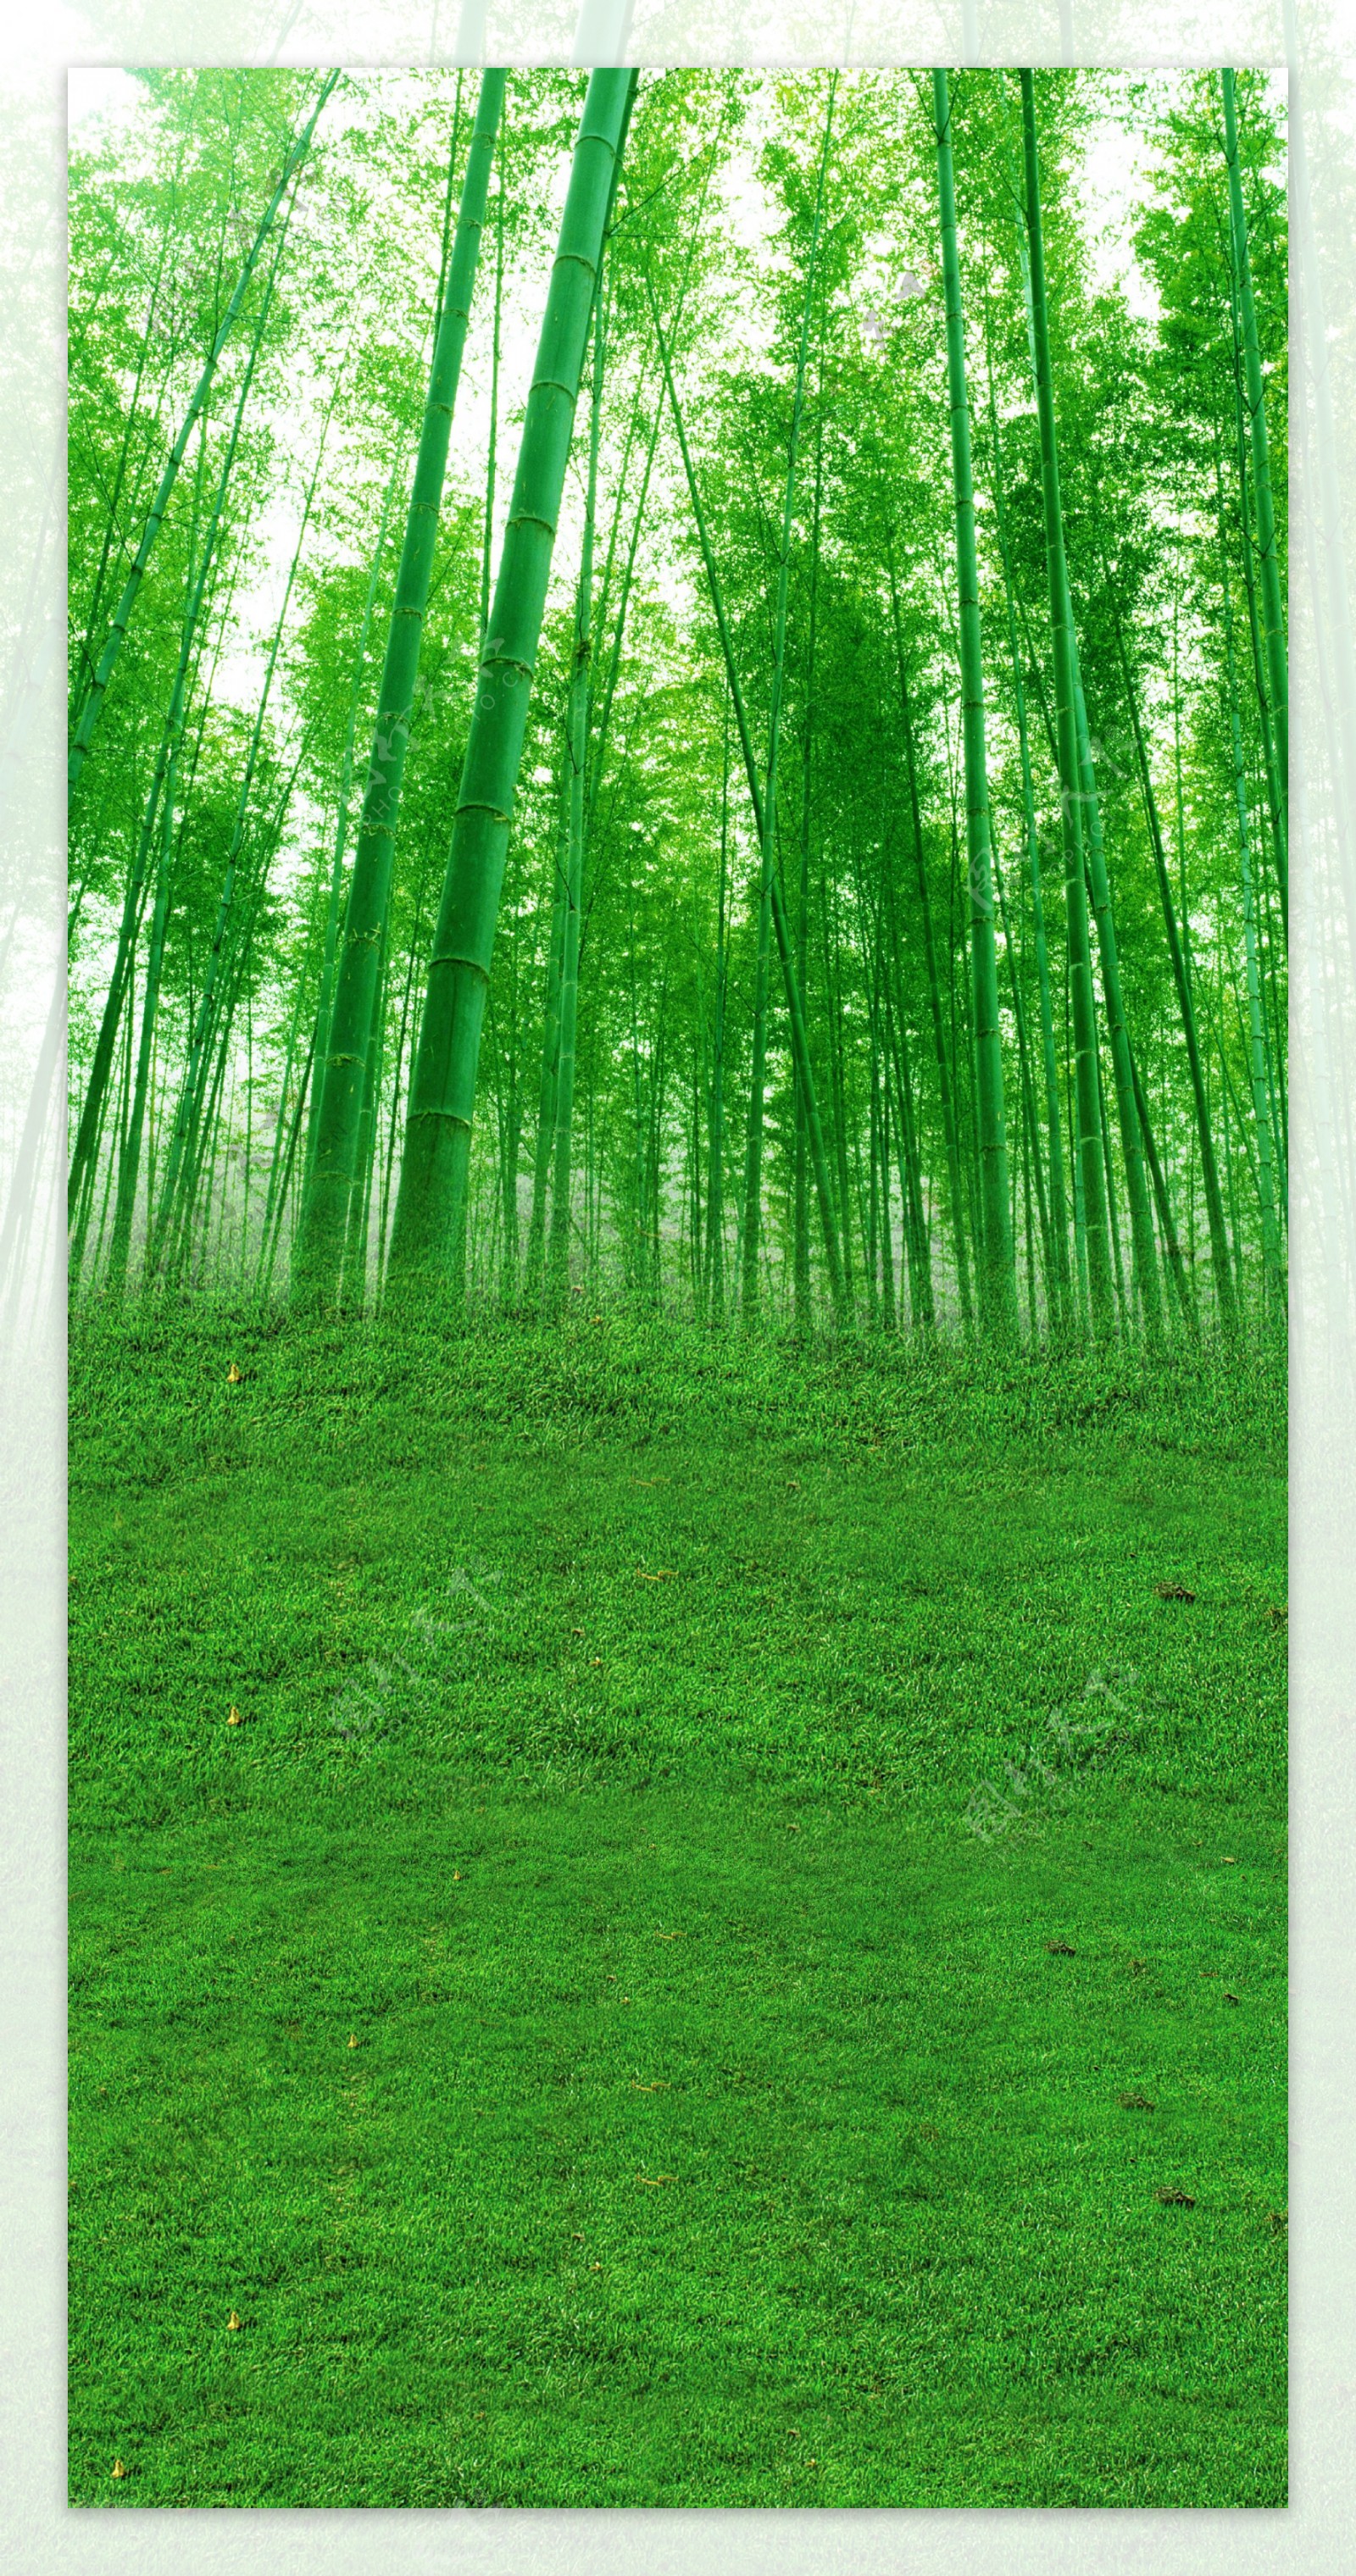 郁郁葱葱的竹叶林影楼摄影背景图片